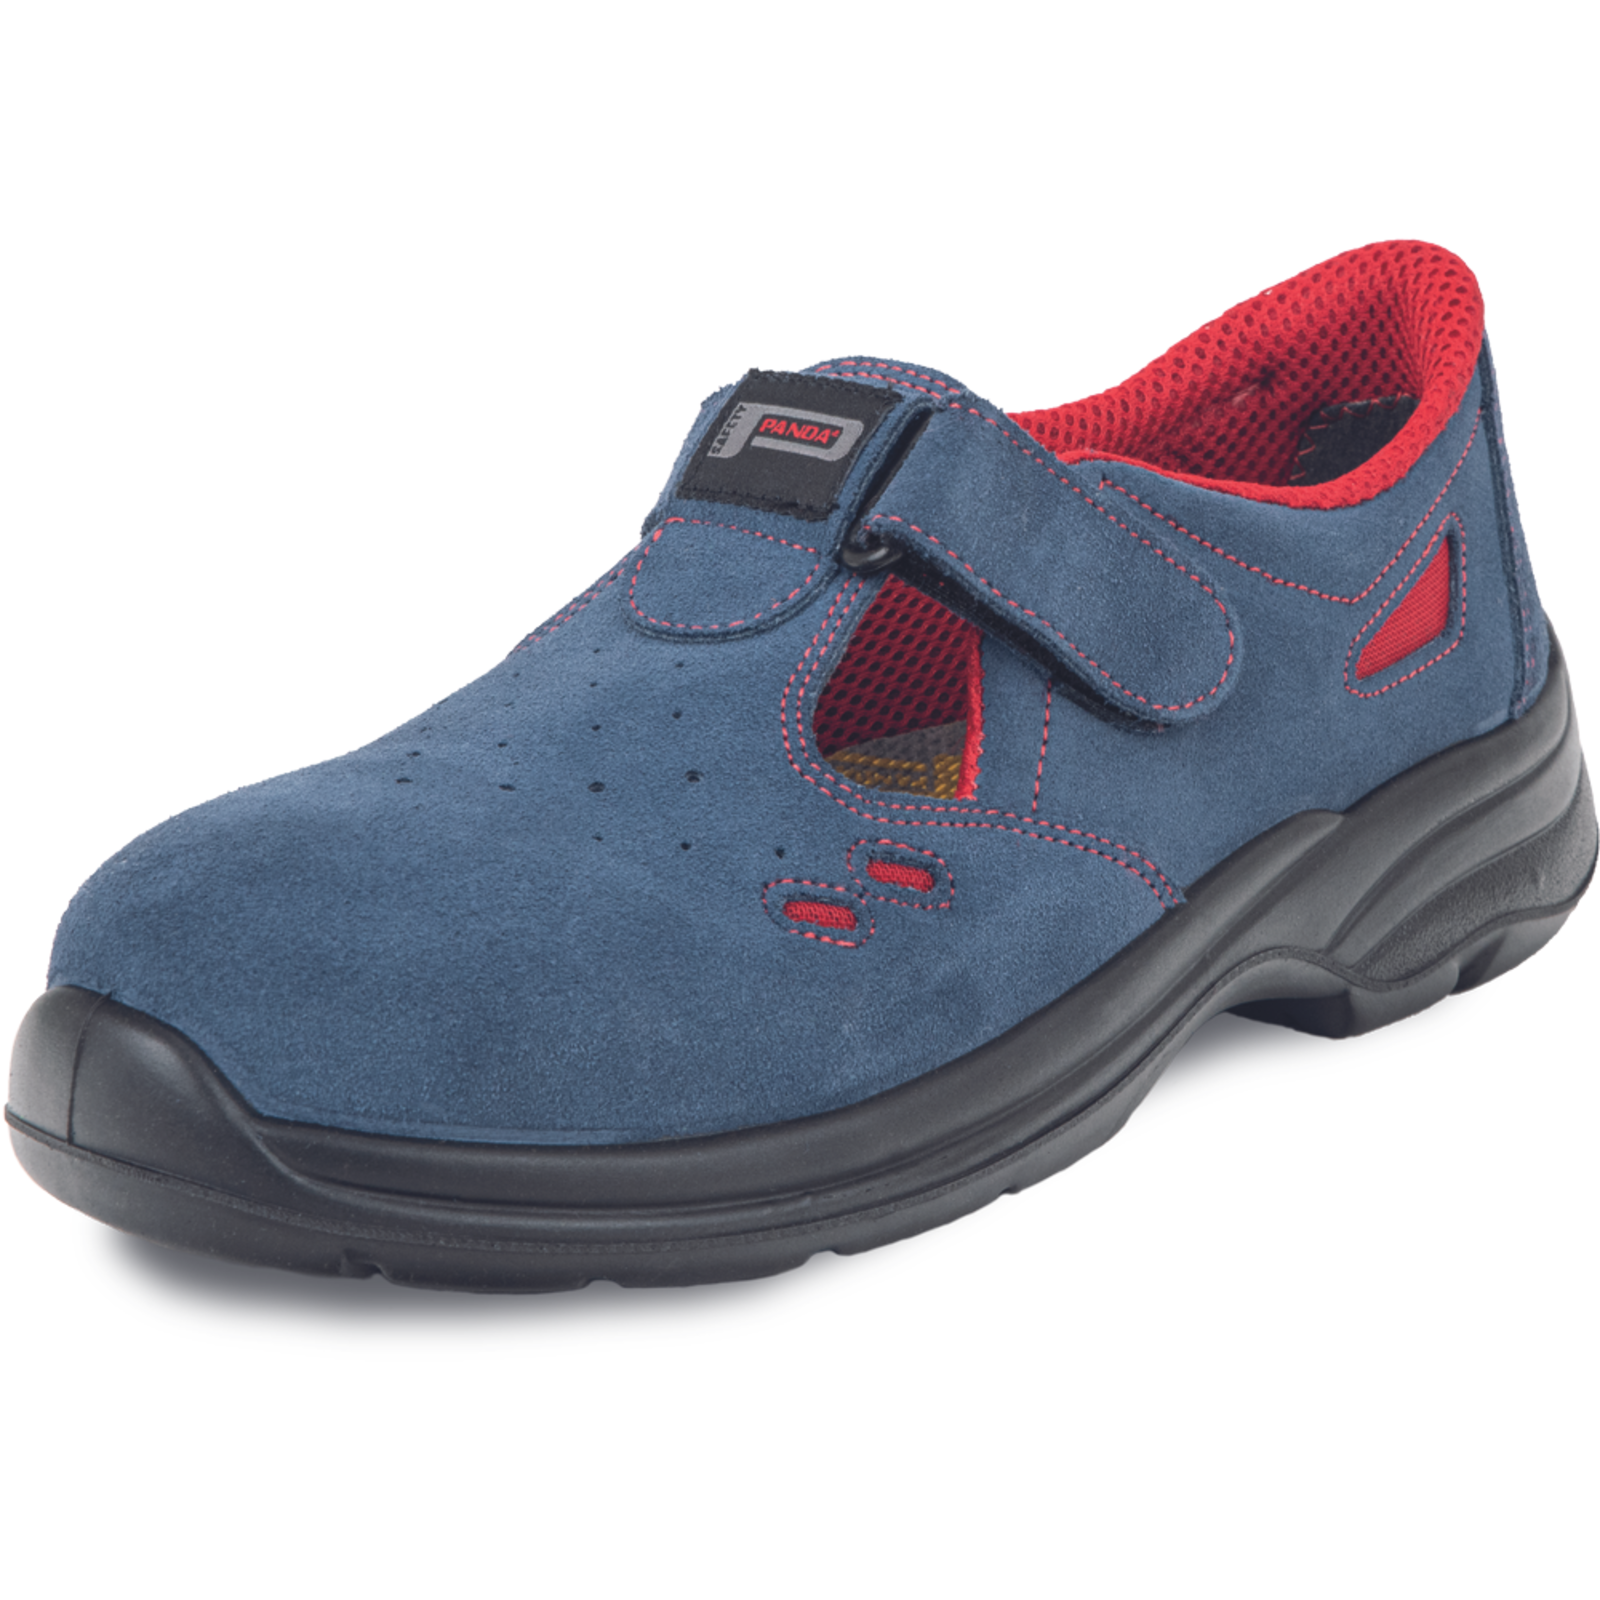 Pracovné bezpečnostné sandále Panda Ringo MF S1 SRC - veľkosť: 46, farba: modrá/červená